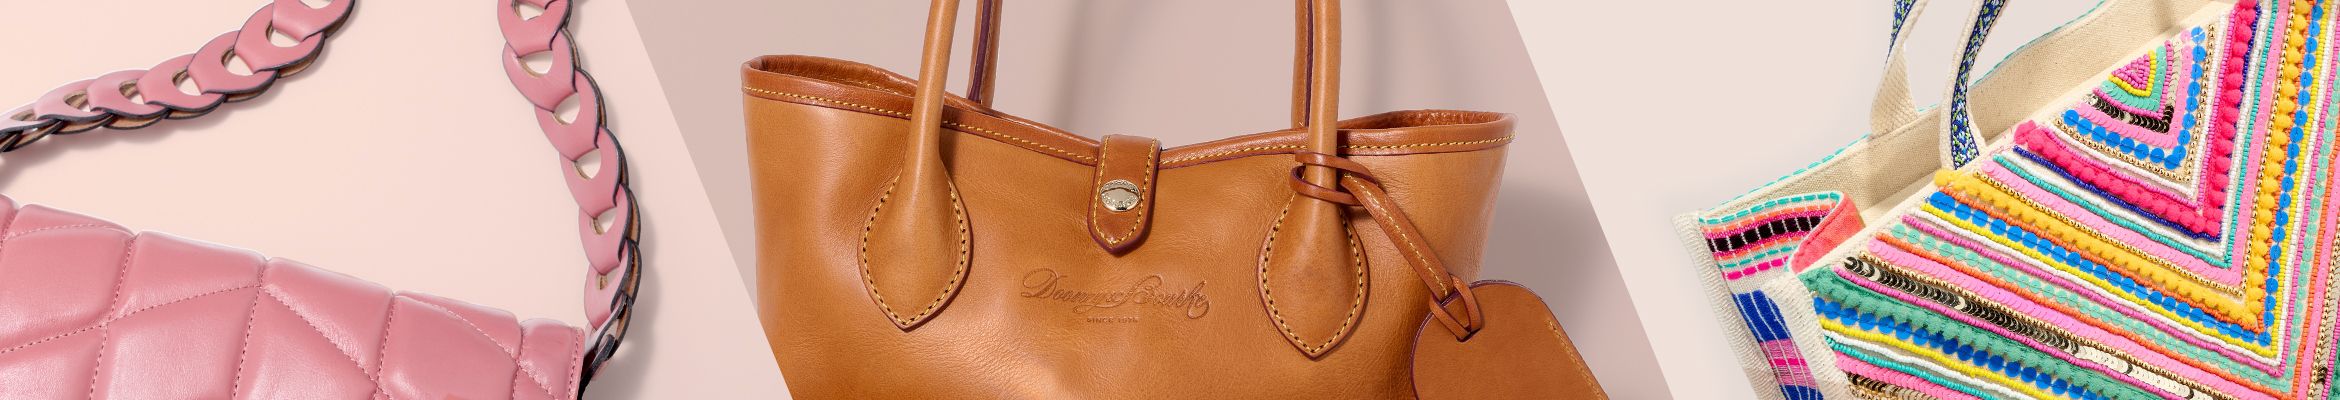 Poppy Women's Fashion Colorblock Tassel Zipper Dome Crossbody Bag with  Wallet 2-in-1 Set 